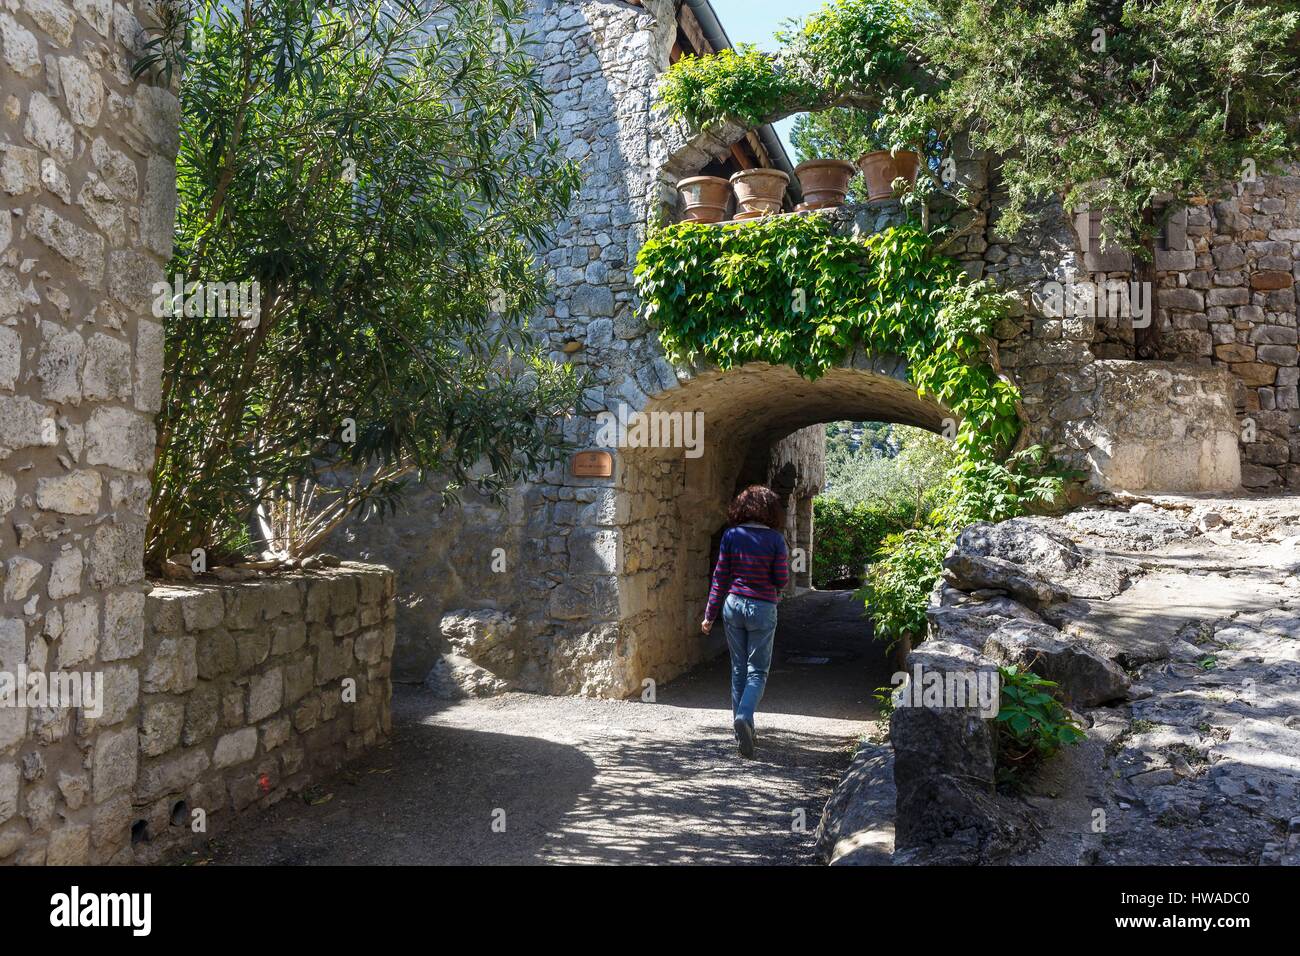 France, Ardeche, Balazuc, labelled Les Plus Beaux Villages de France (The Most Beautiful Villages of France), vaulted passage Stock Photo